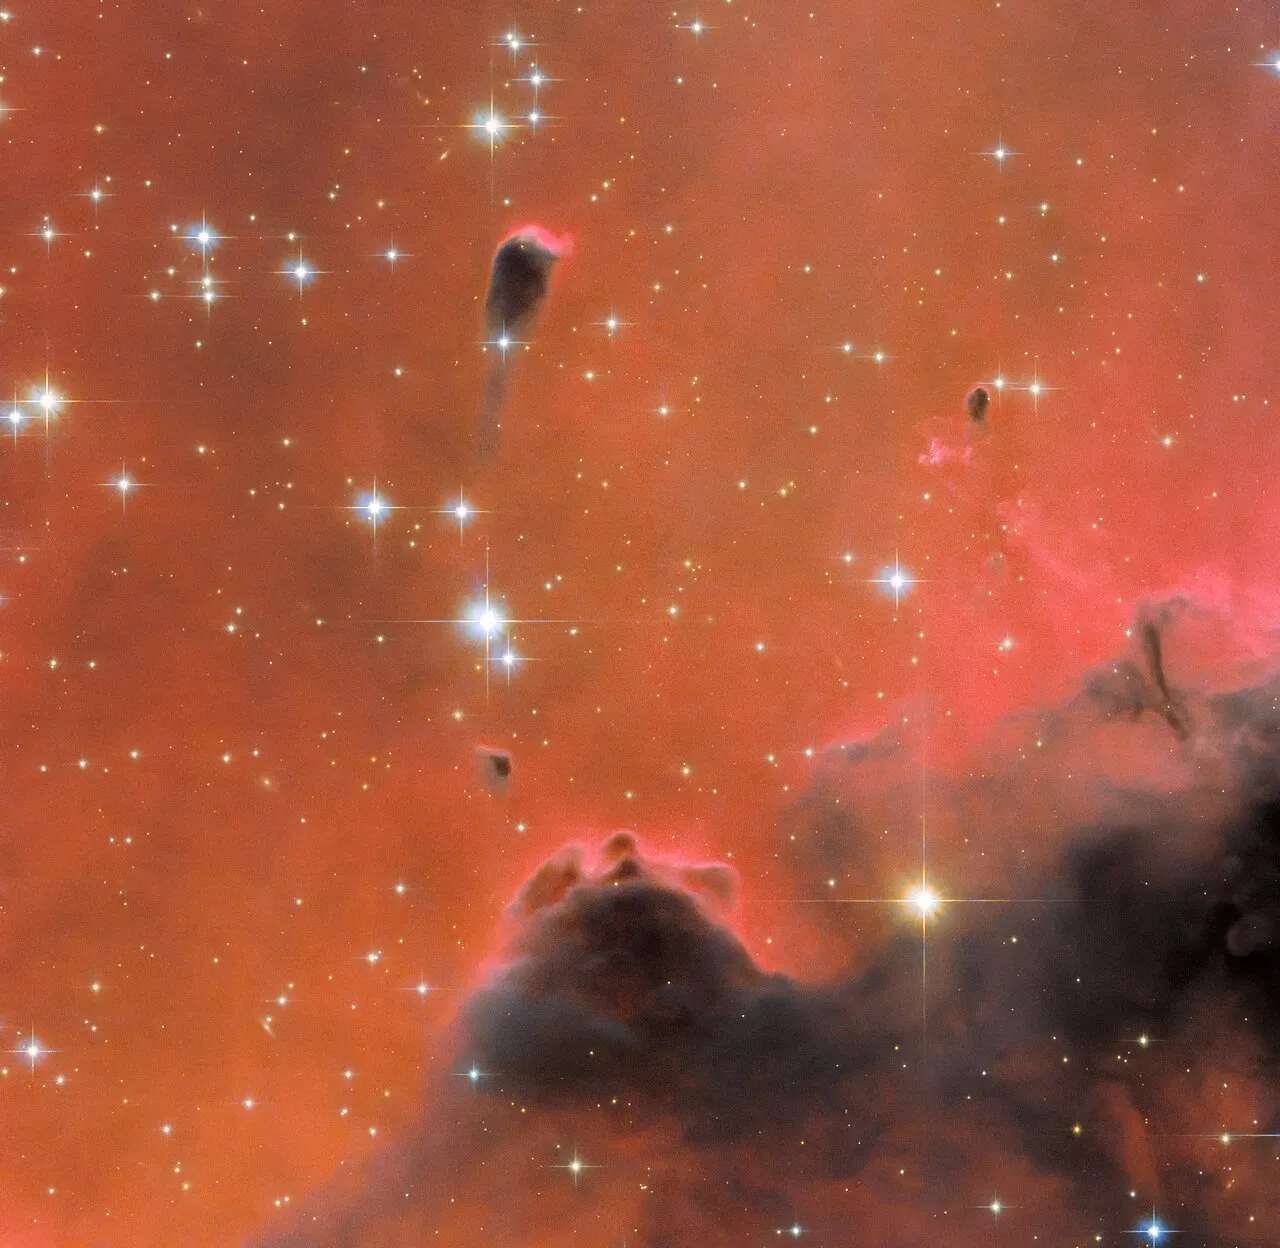 哈勃太空望远镜拍摄一个闪亮的红色星云